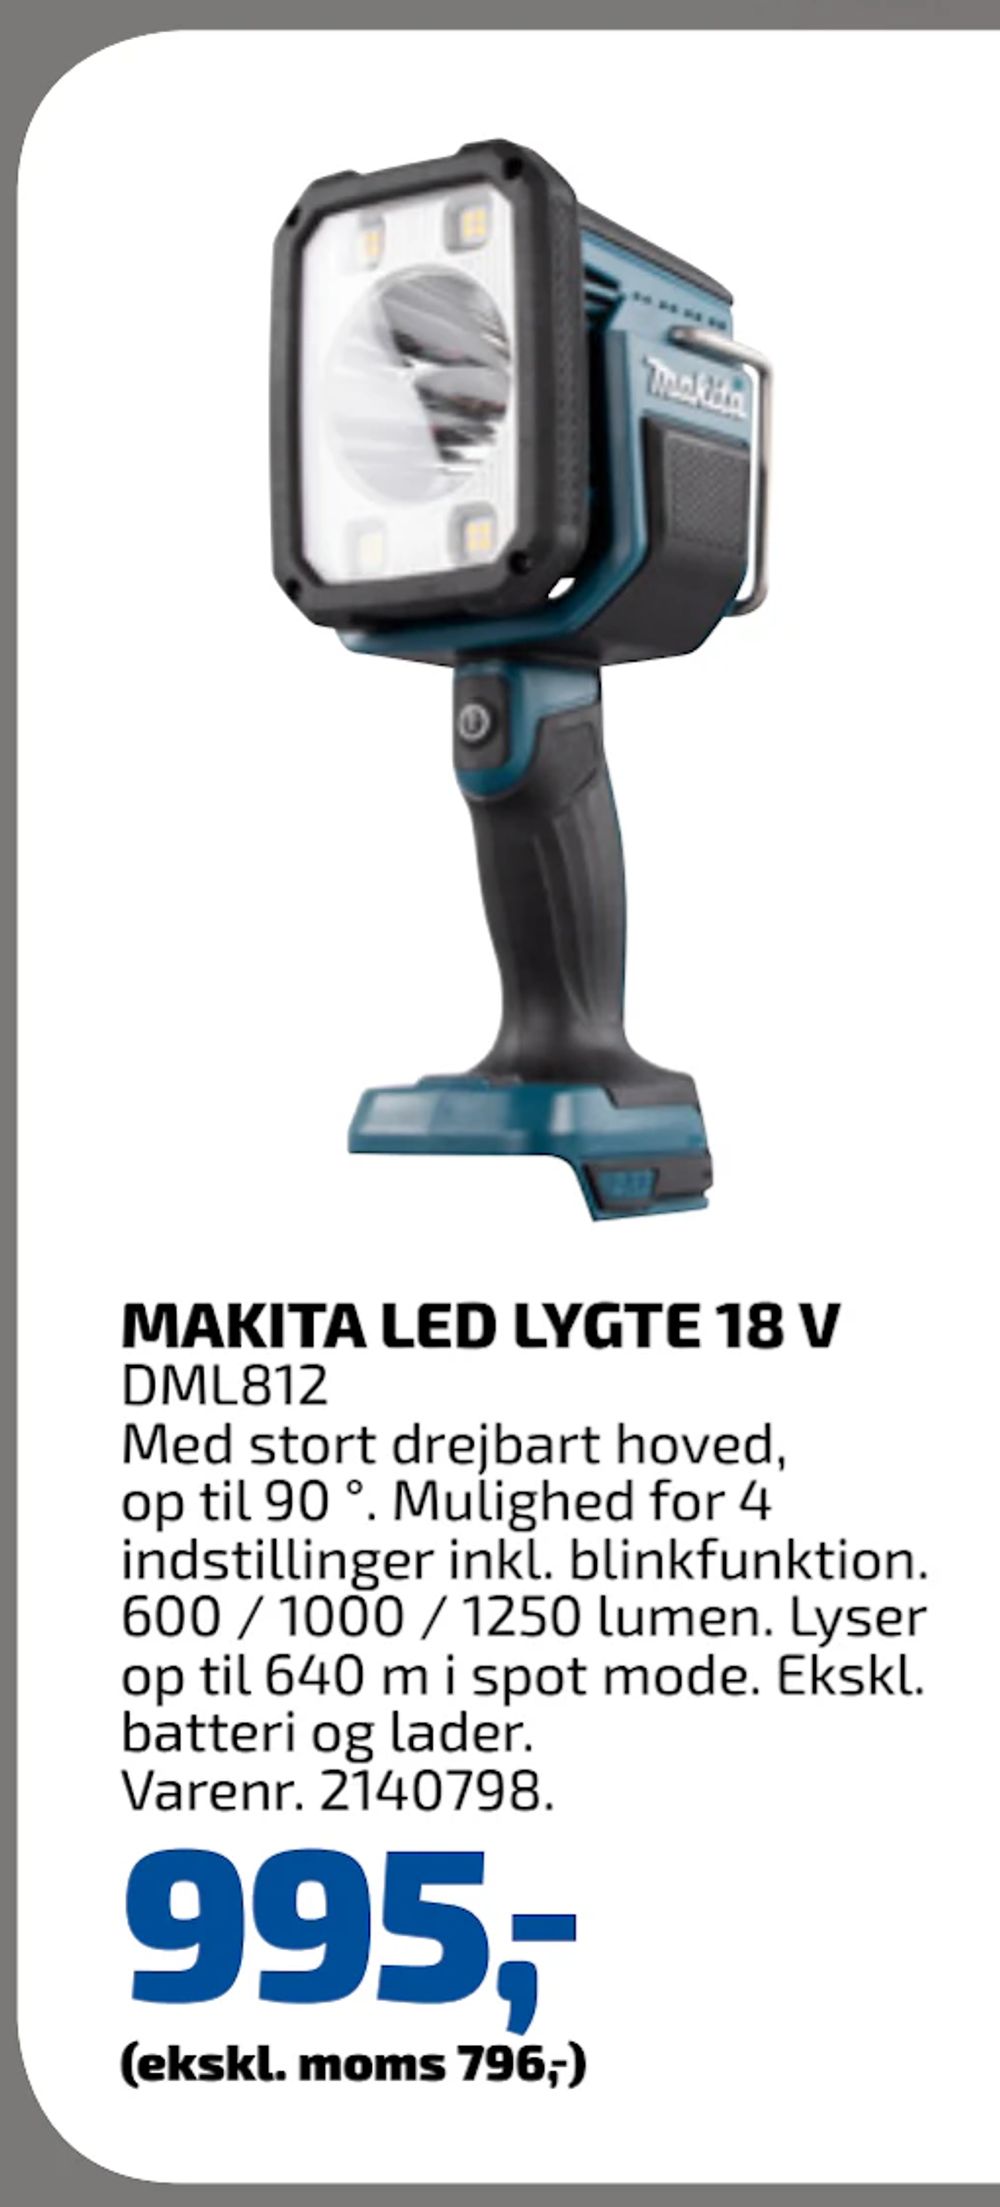 Tilbud på MAKITA LED LYGTE 18 V fra Davidsen til 995 kr.